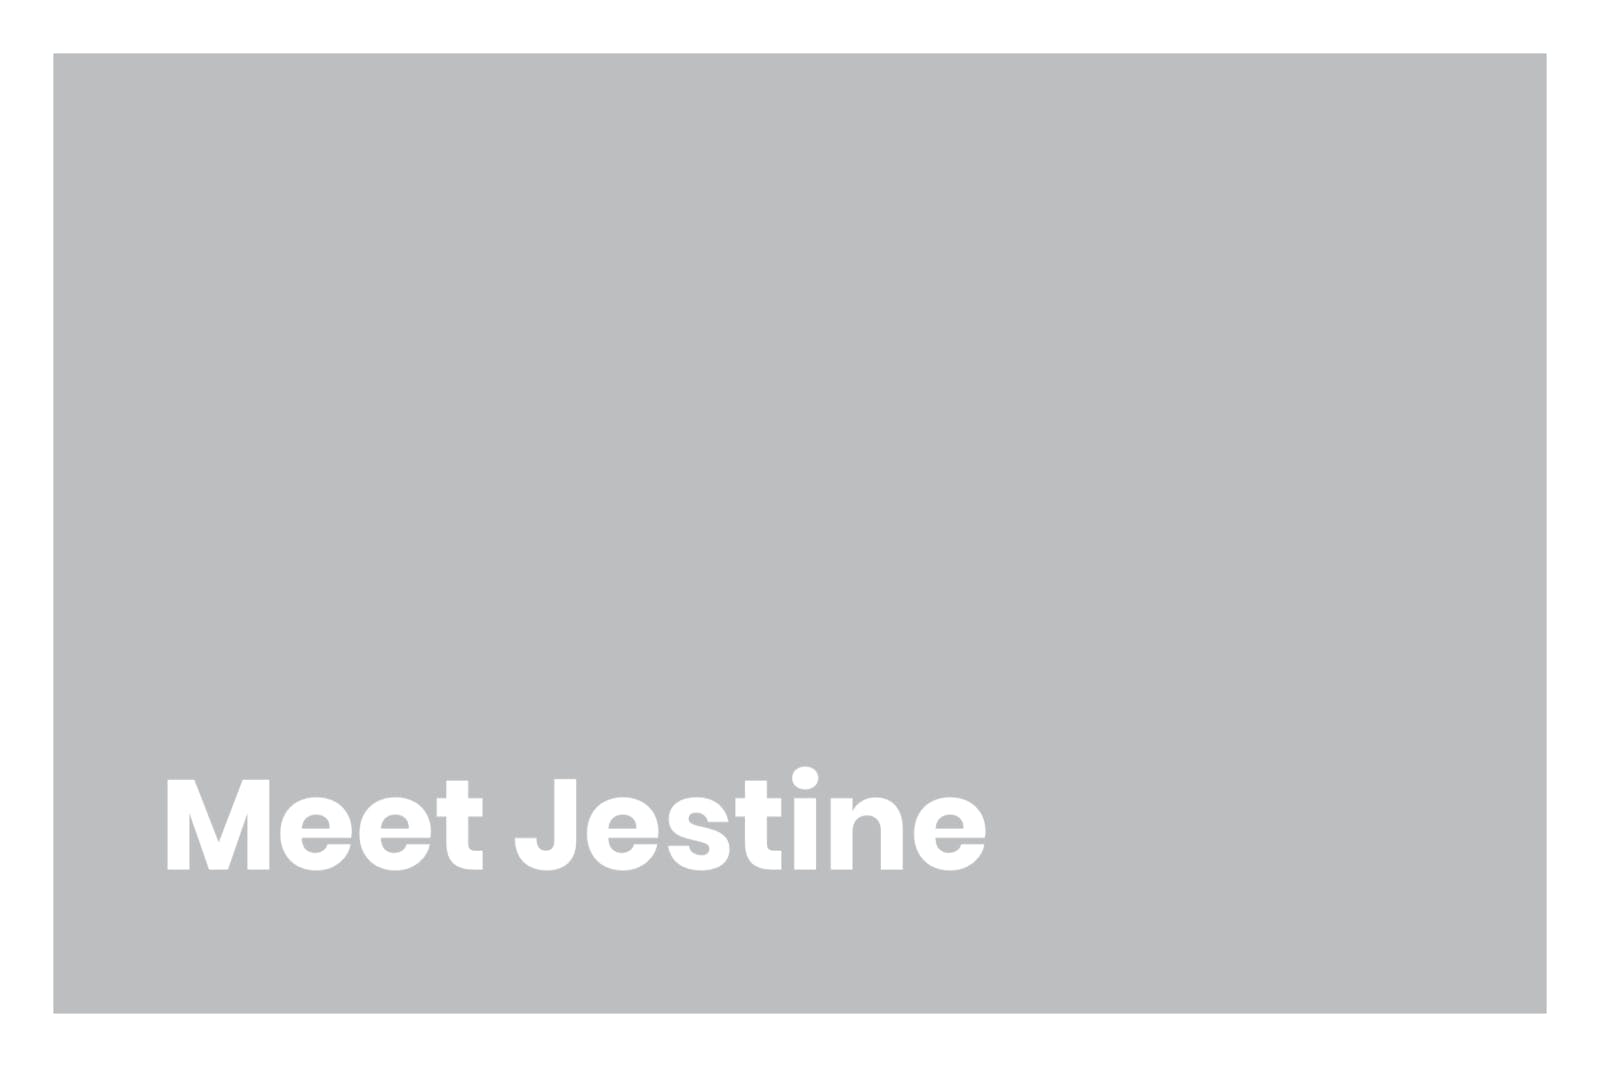 Meet Jestine